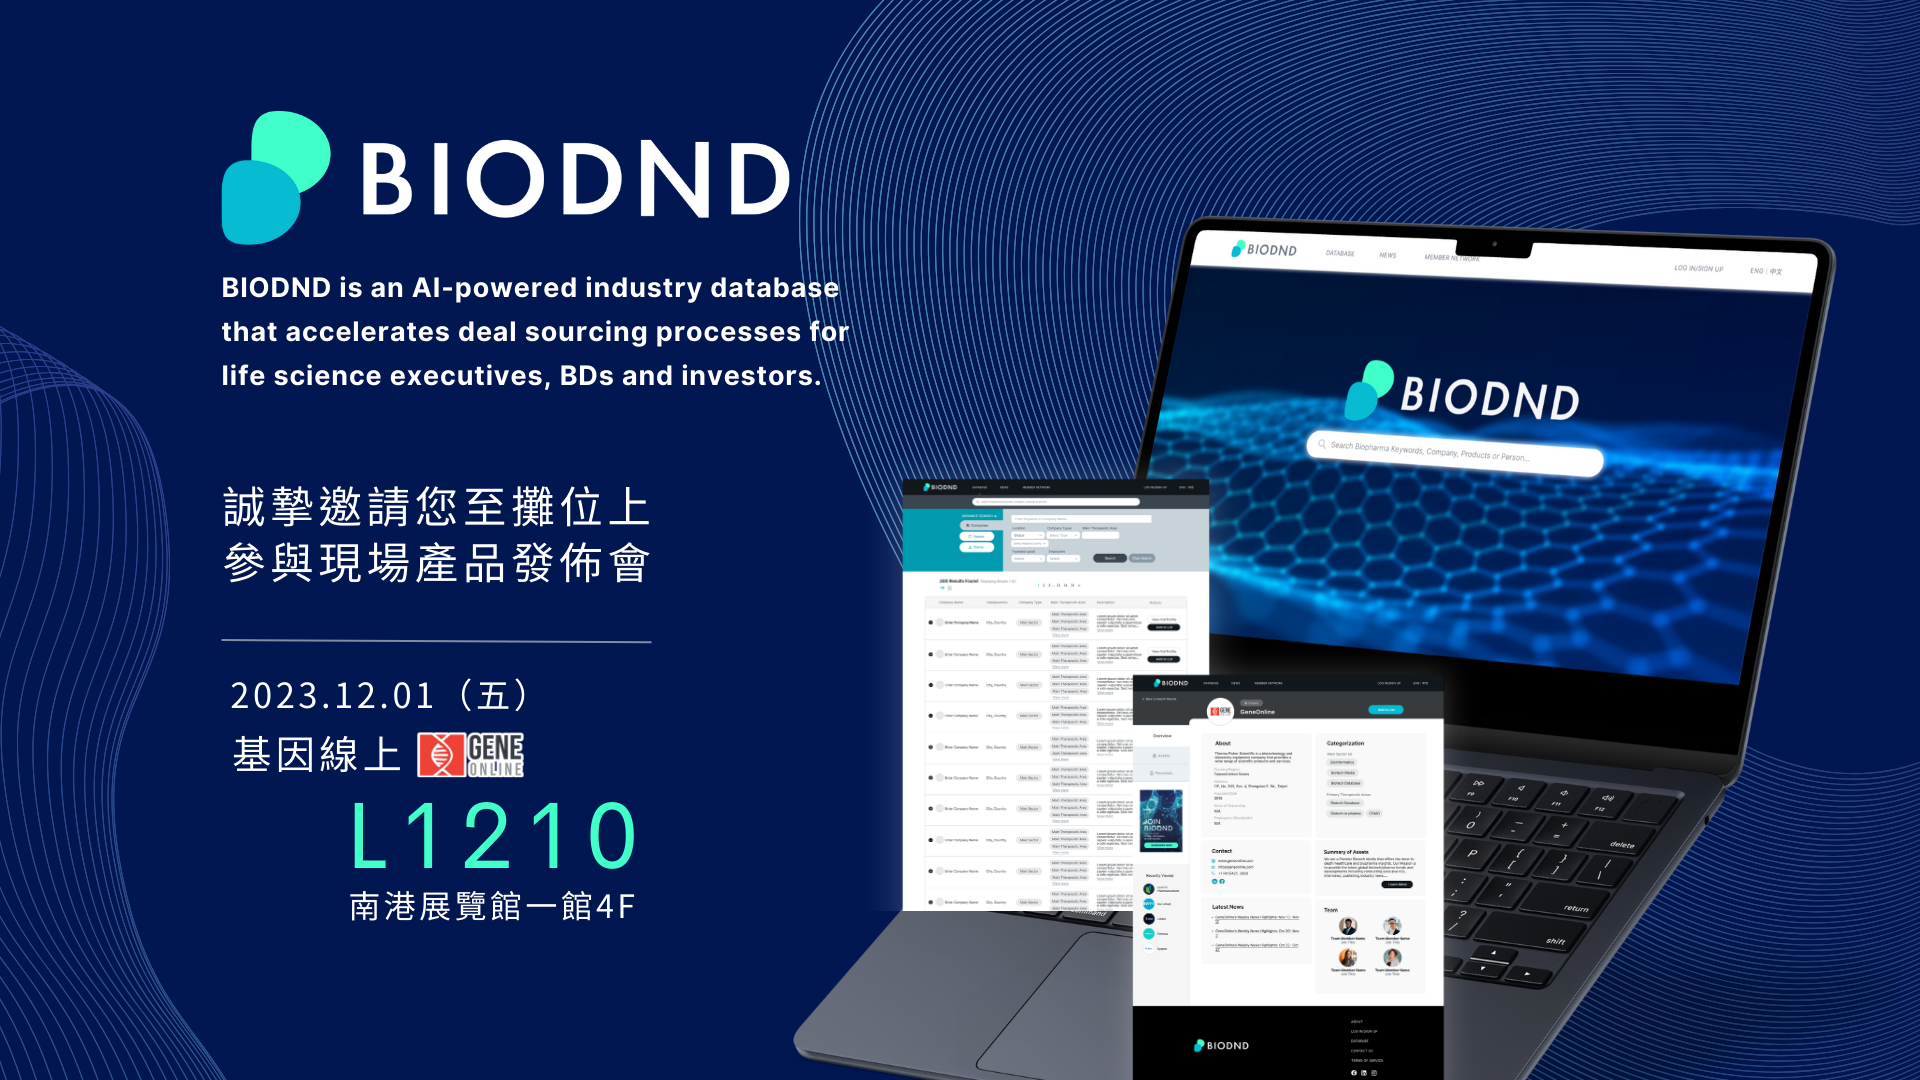  BIODND 產品發佈會資訊。